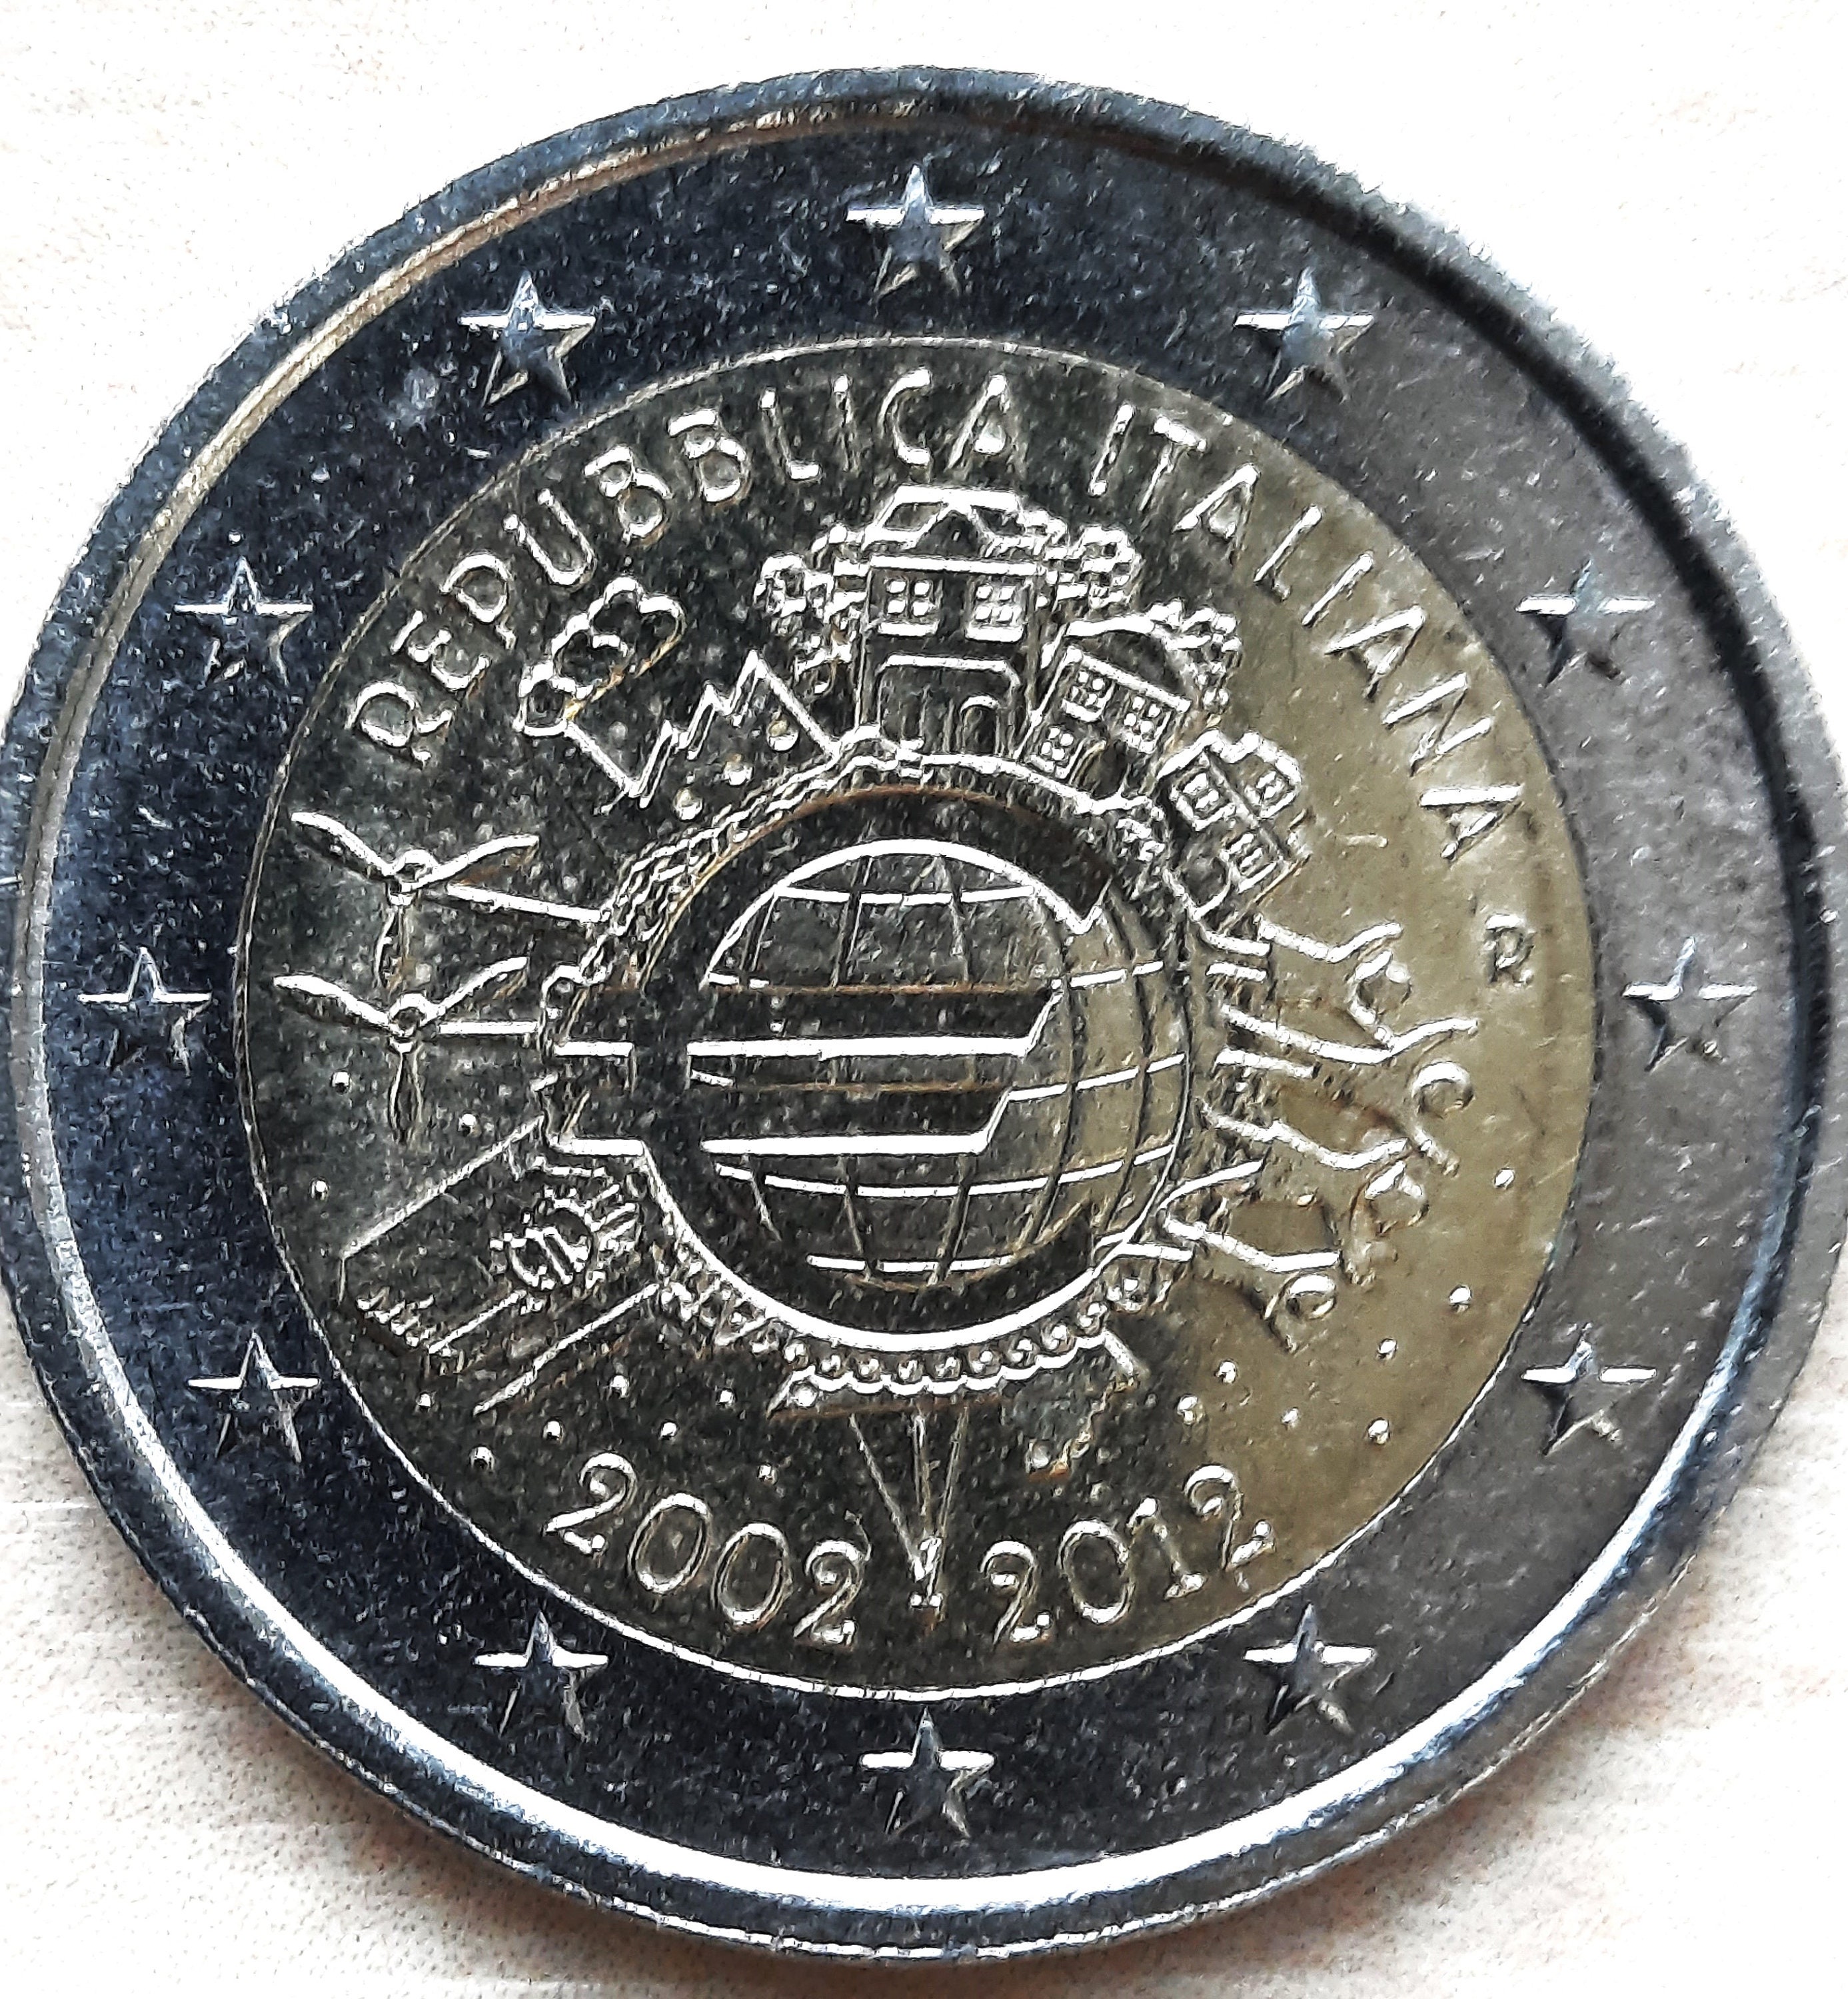 Présentoir en plexiglas pour pièces de 2 euros commémoratives